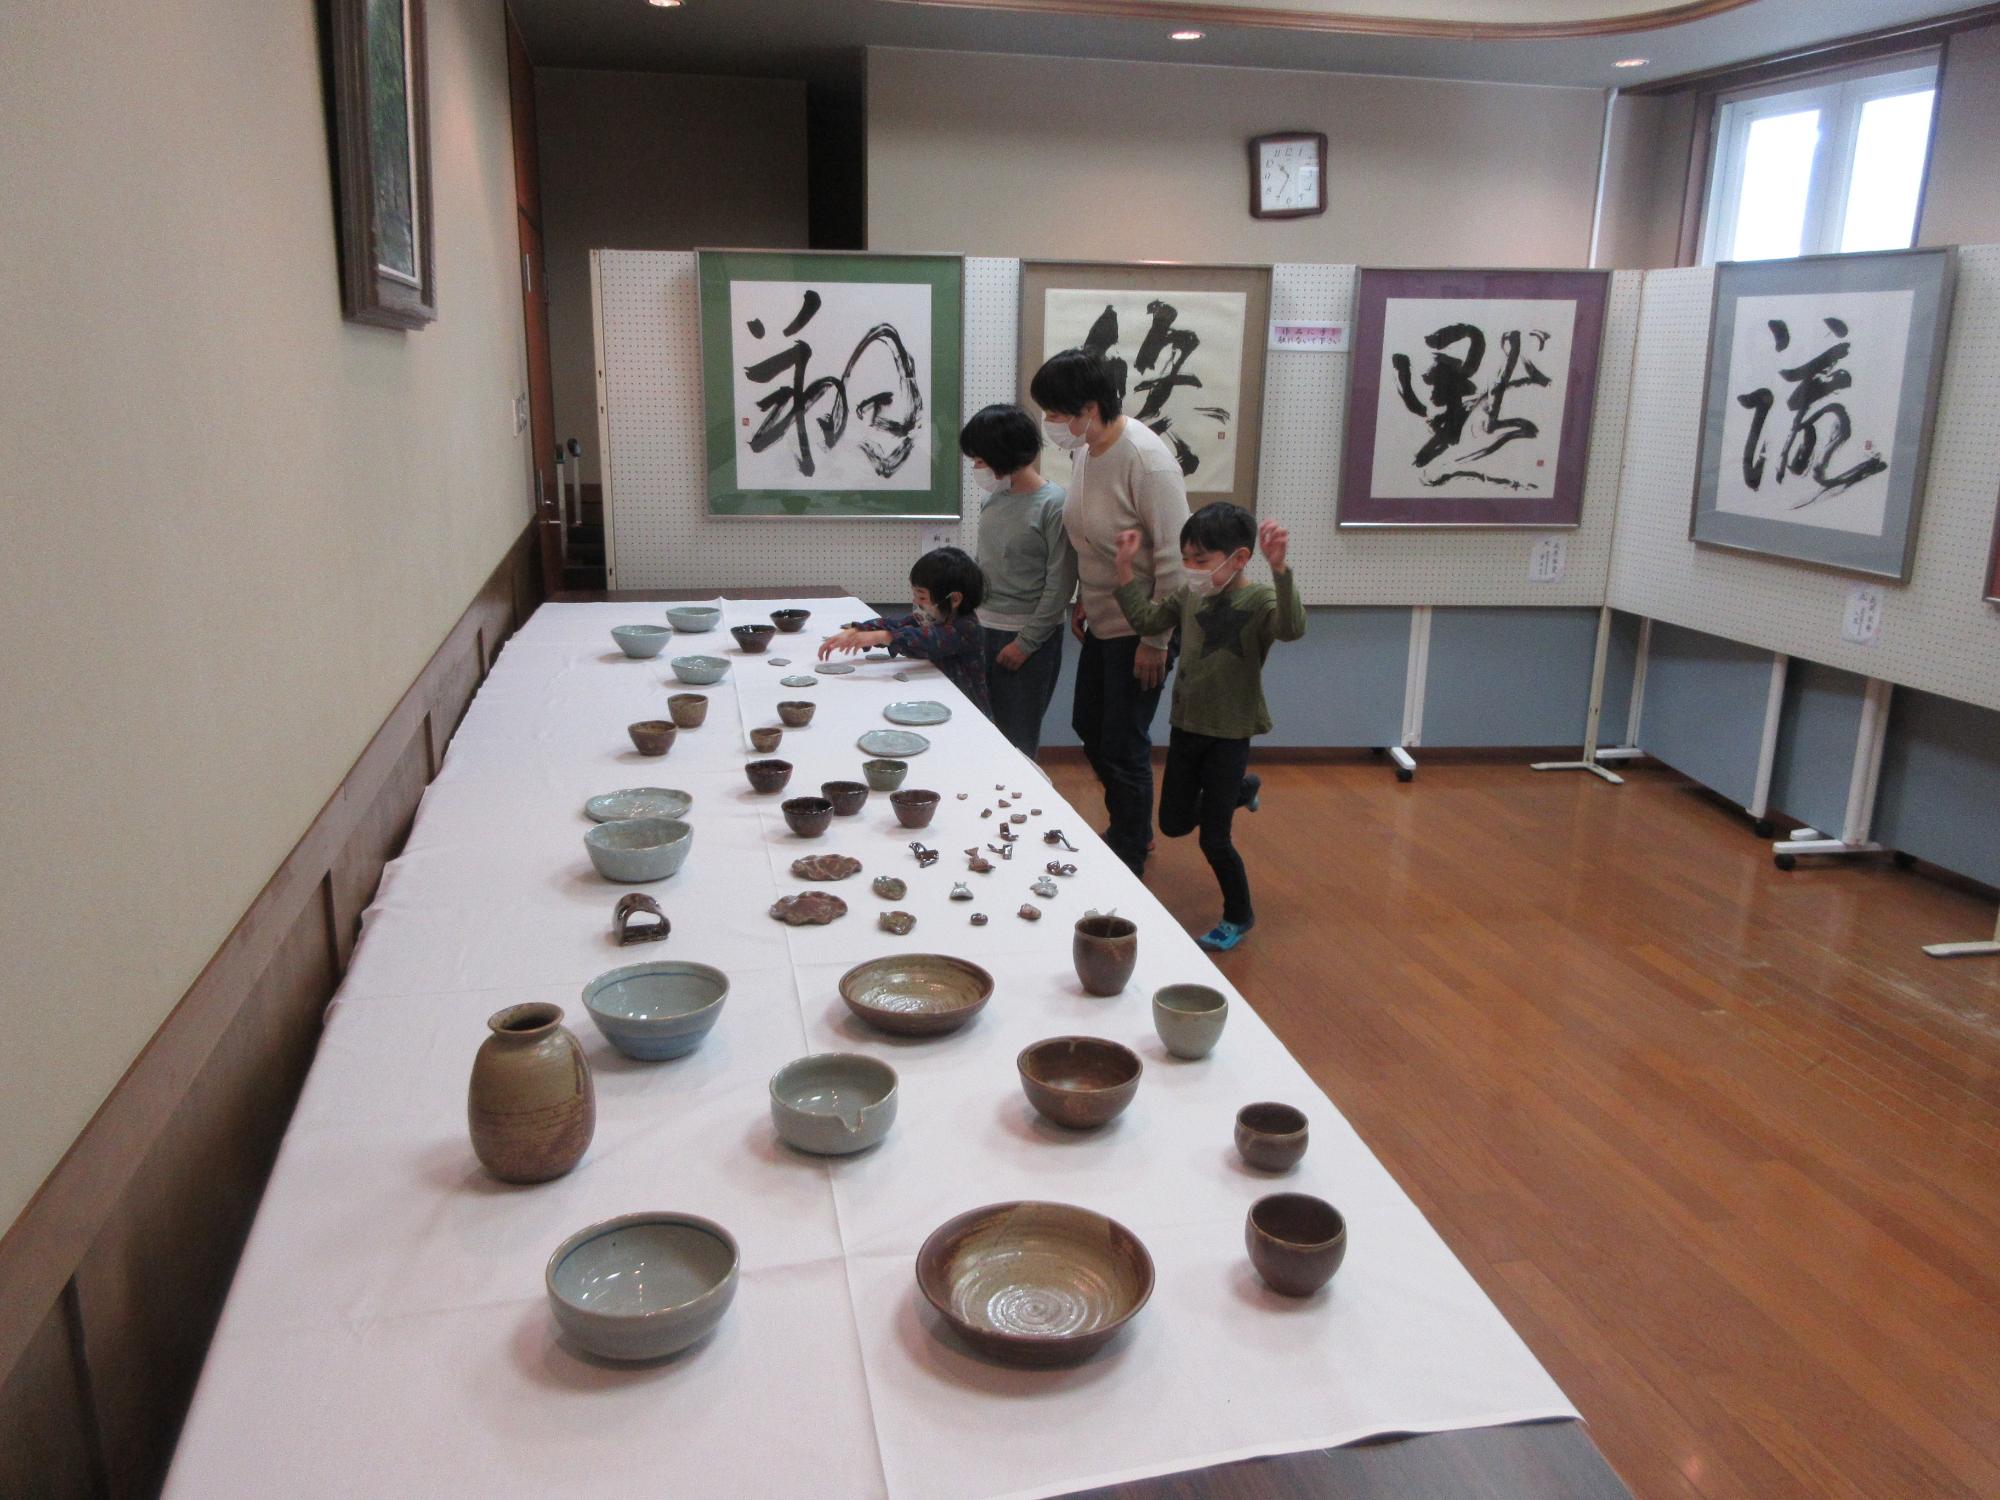 「私の作品展」として、陶芸作品等も展示